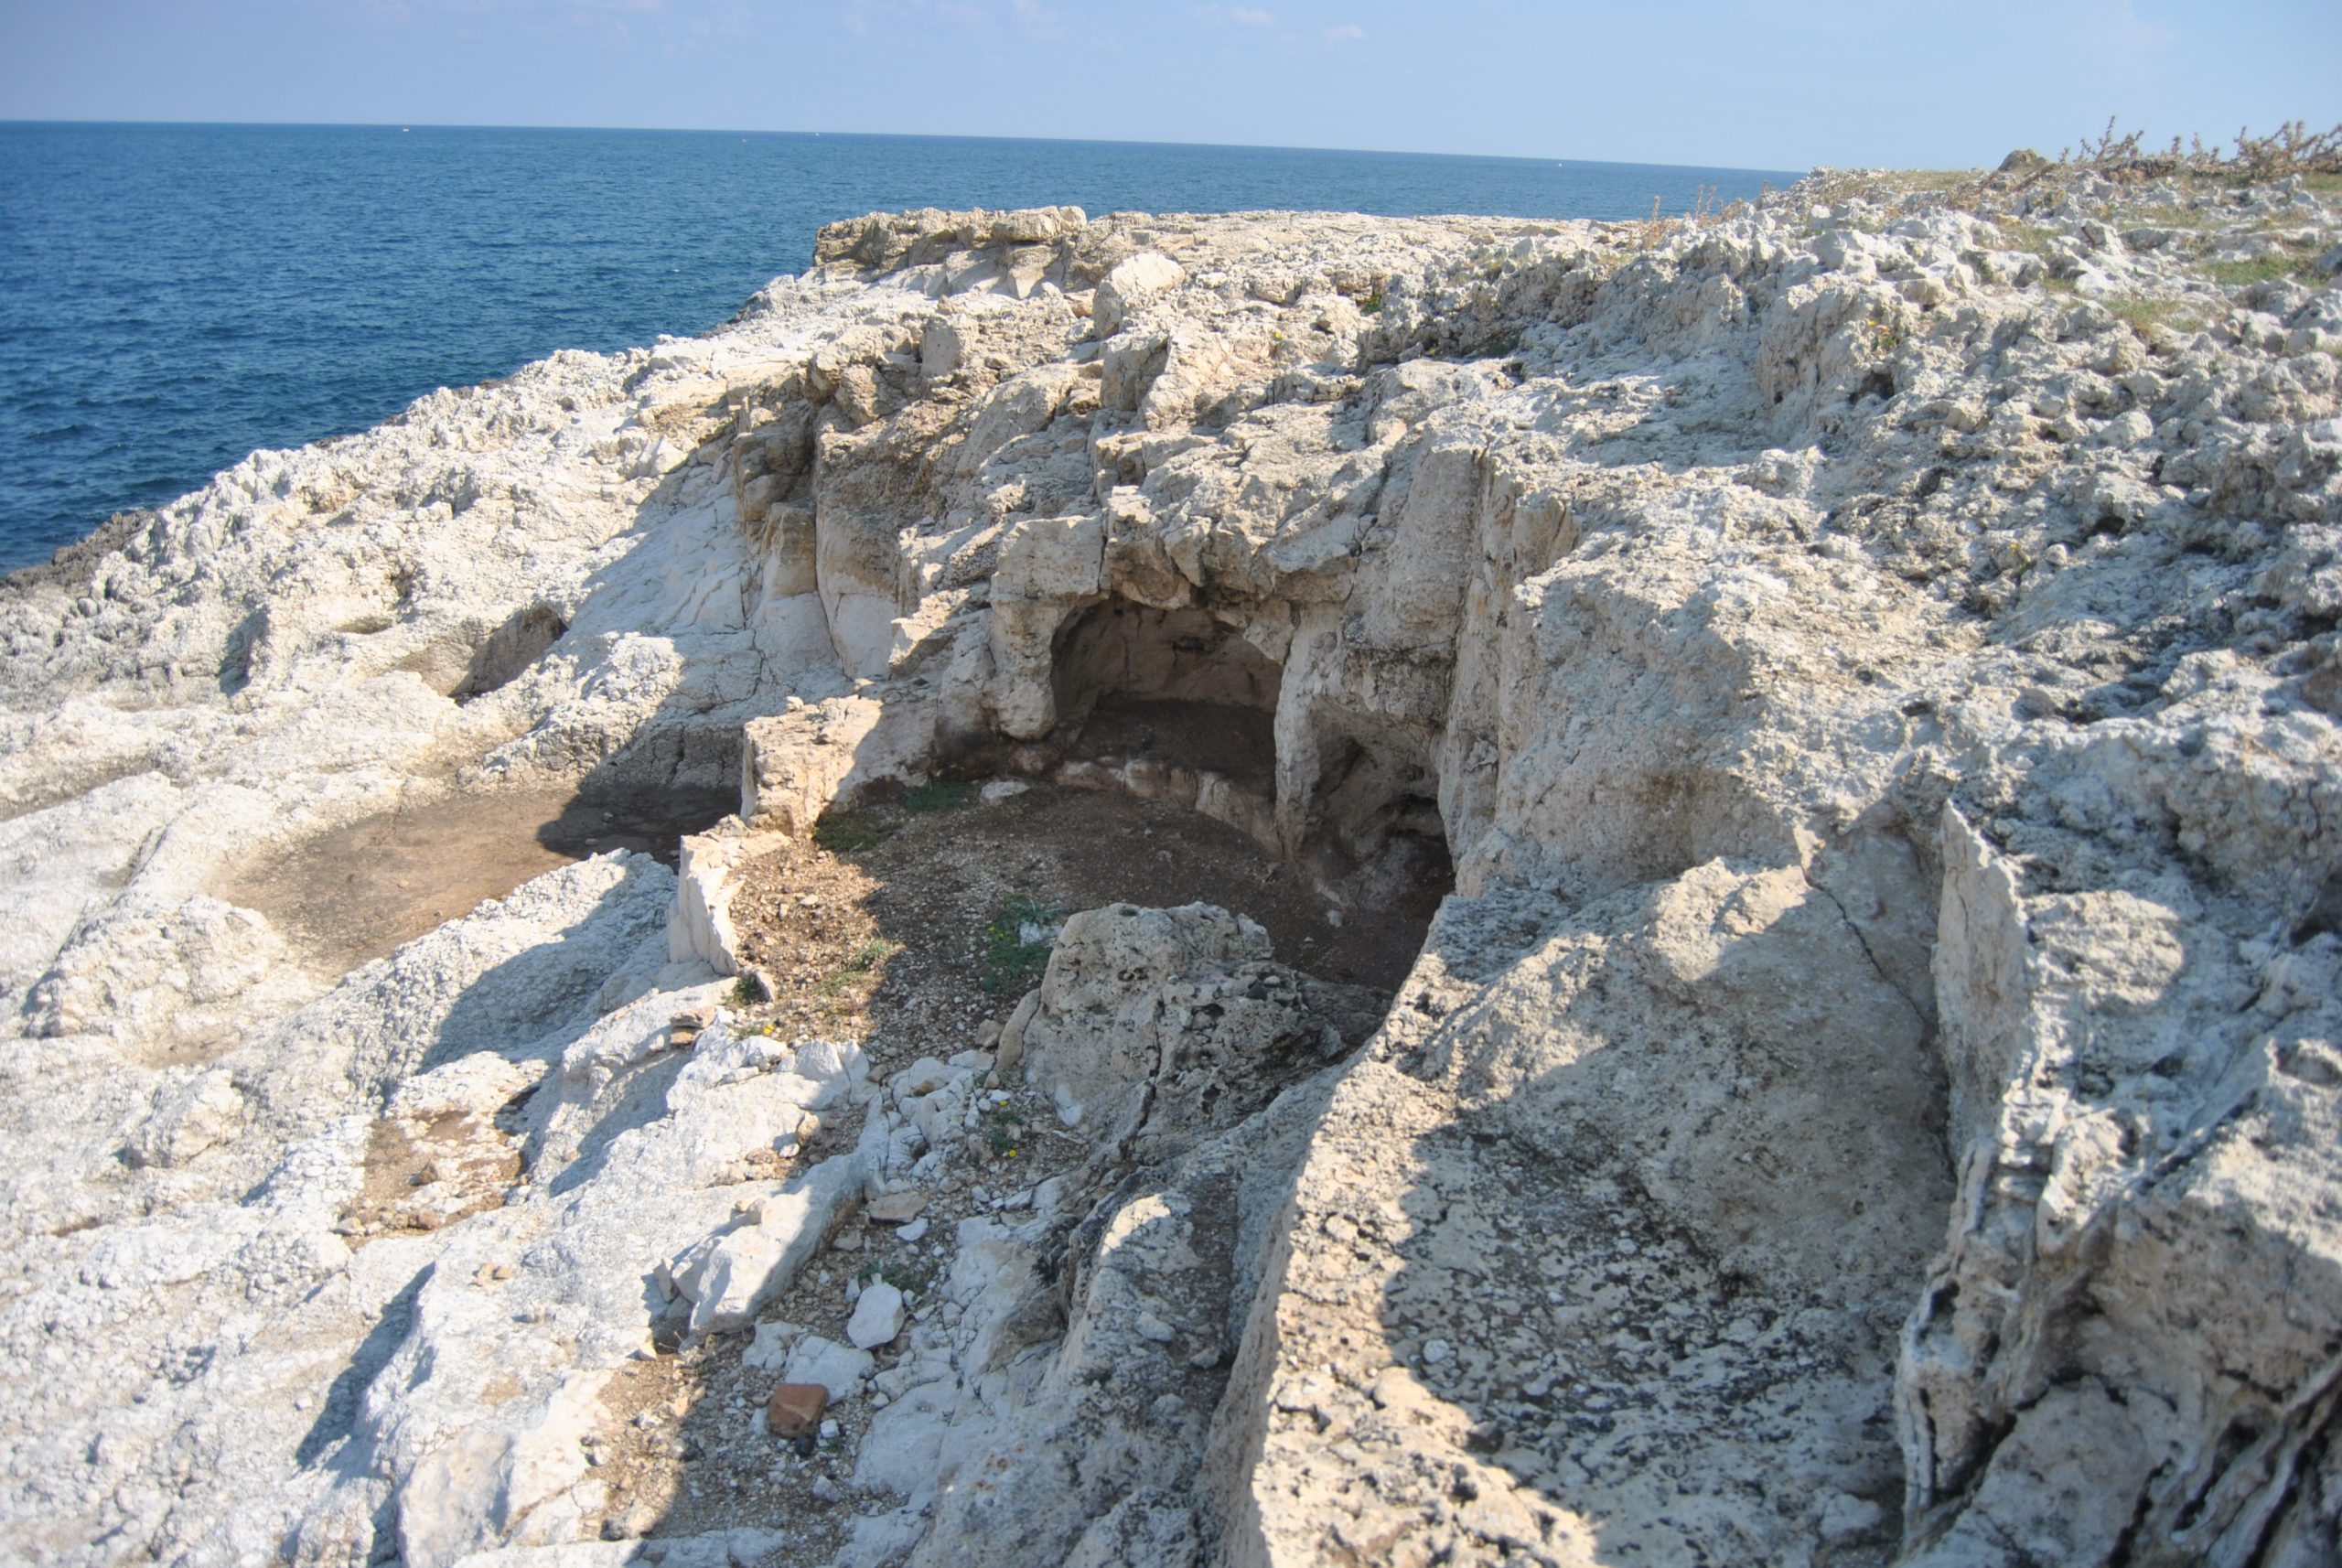 antica tomba scavata nella roccia nei pressi del mare di Priolo Gargallo, Siracusa, Sicilia